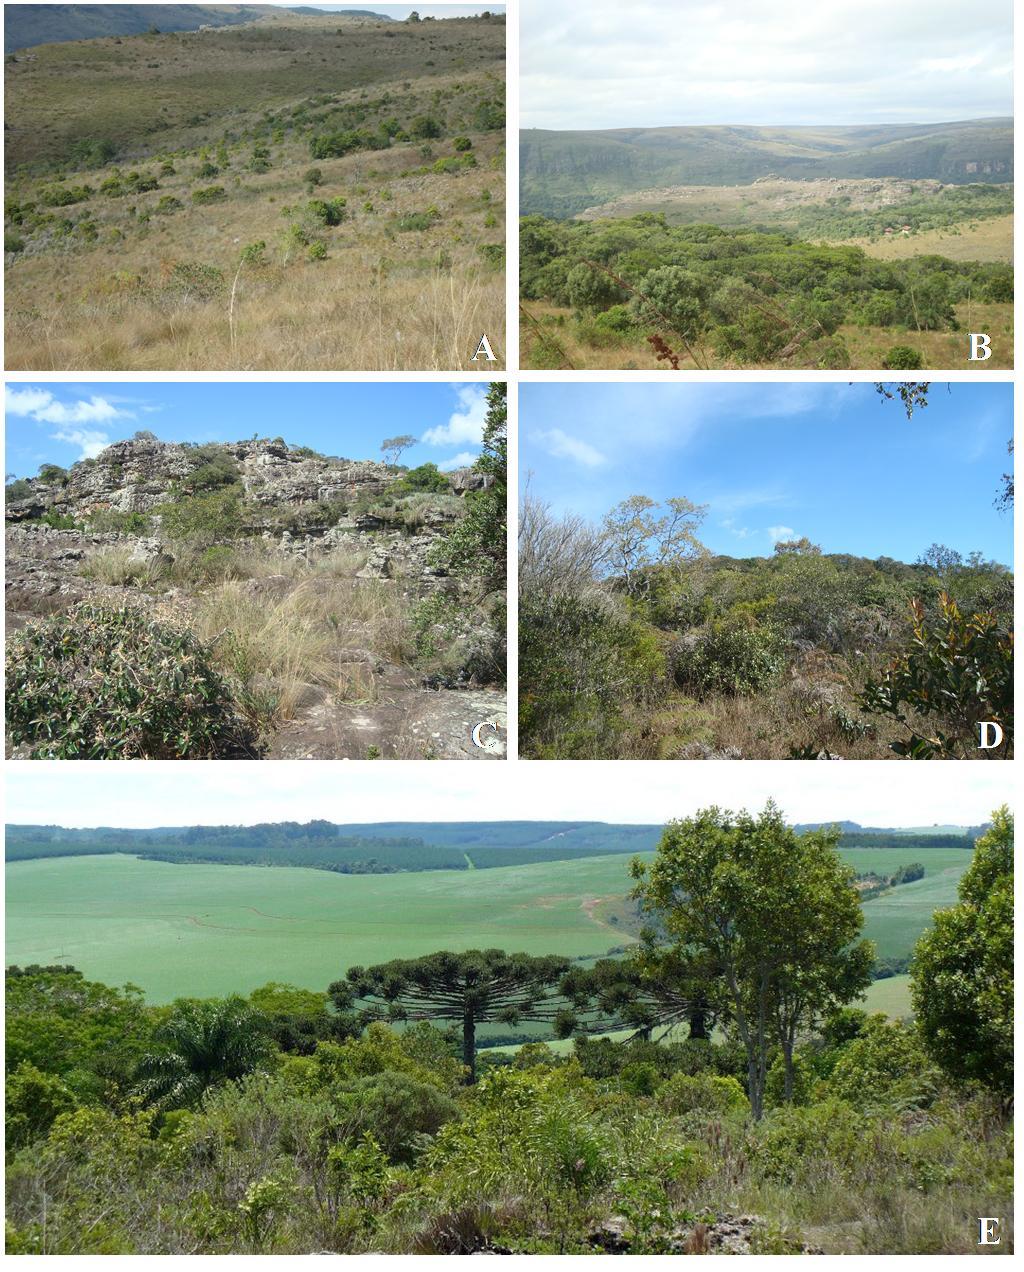 11 FIGURA 2 - Tipos vegetacionais que são encontrados no Parque Estadual do Guartelá (PEG), Tibagi, Paraná, de acordo com a classificação de Carmo et al (2006) proposta para o PEG. (A.